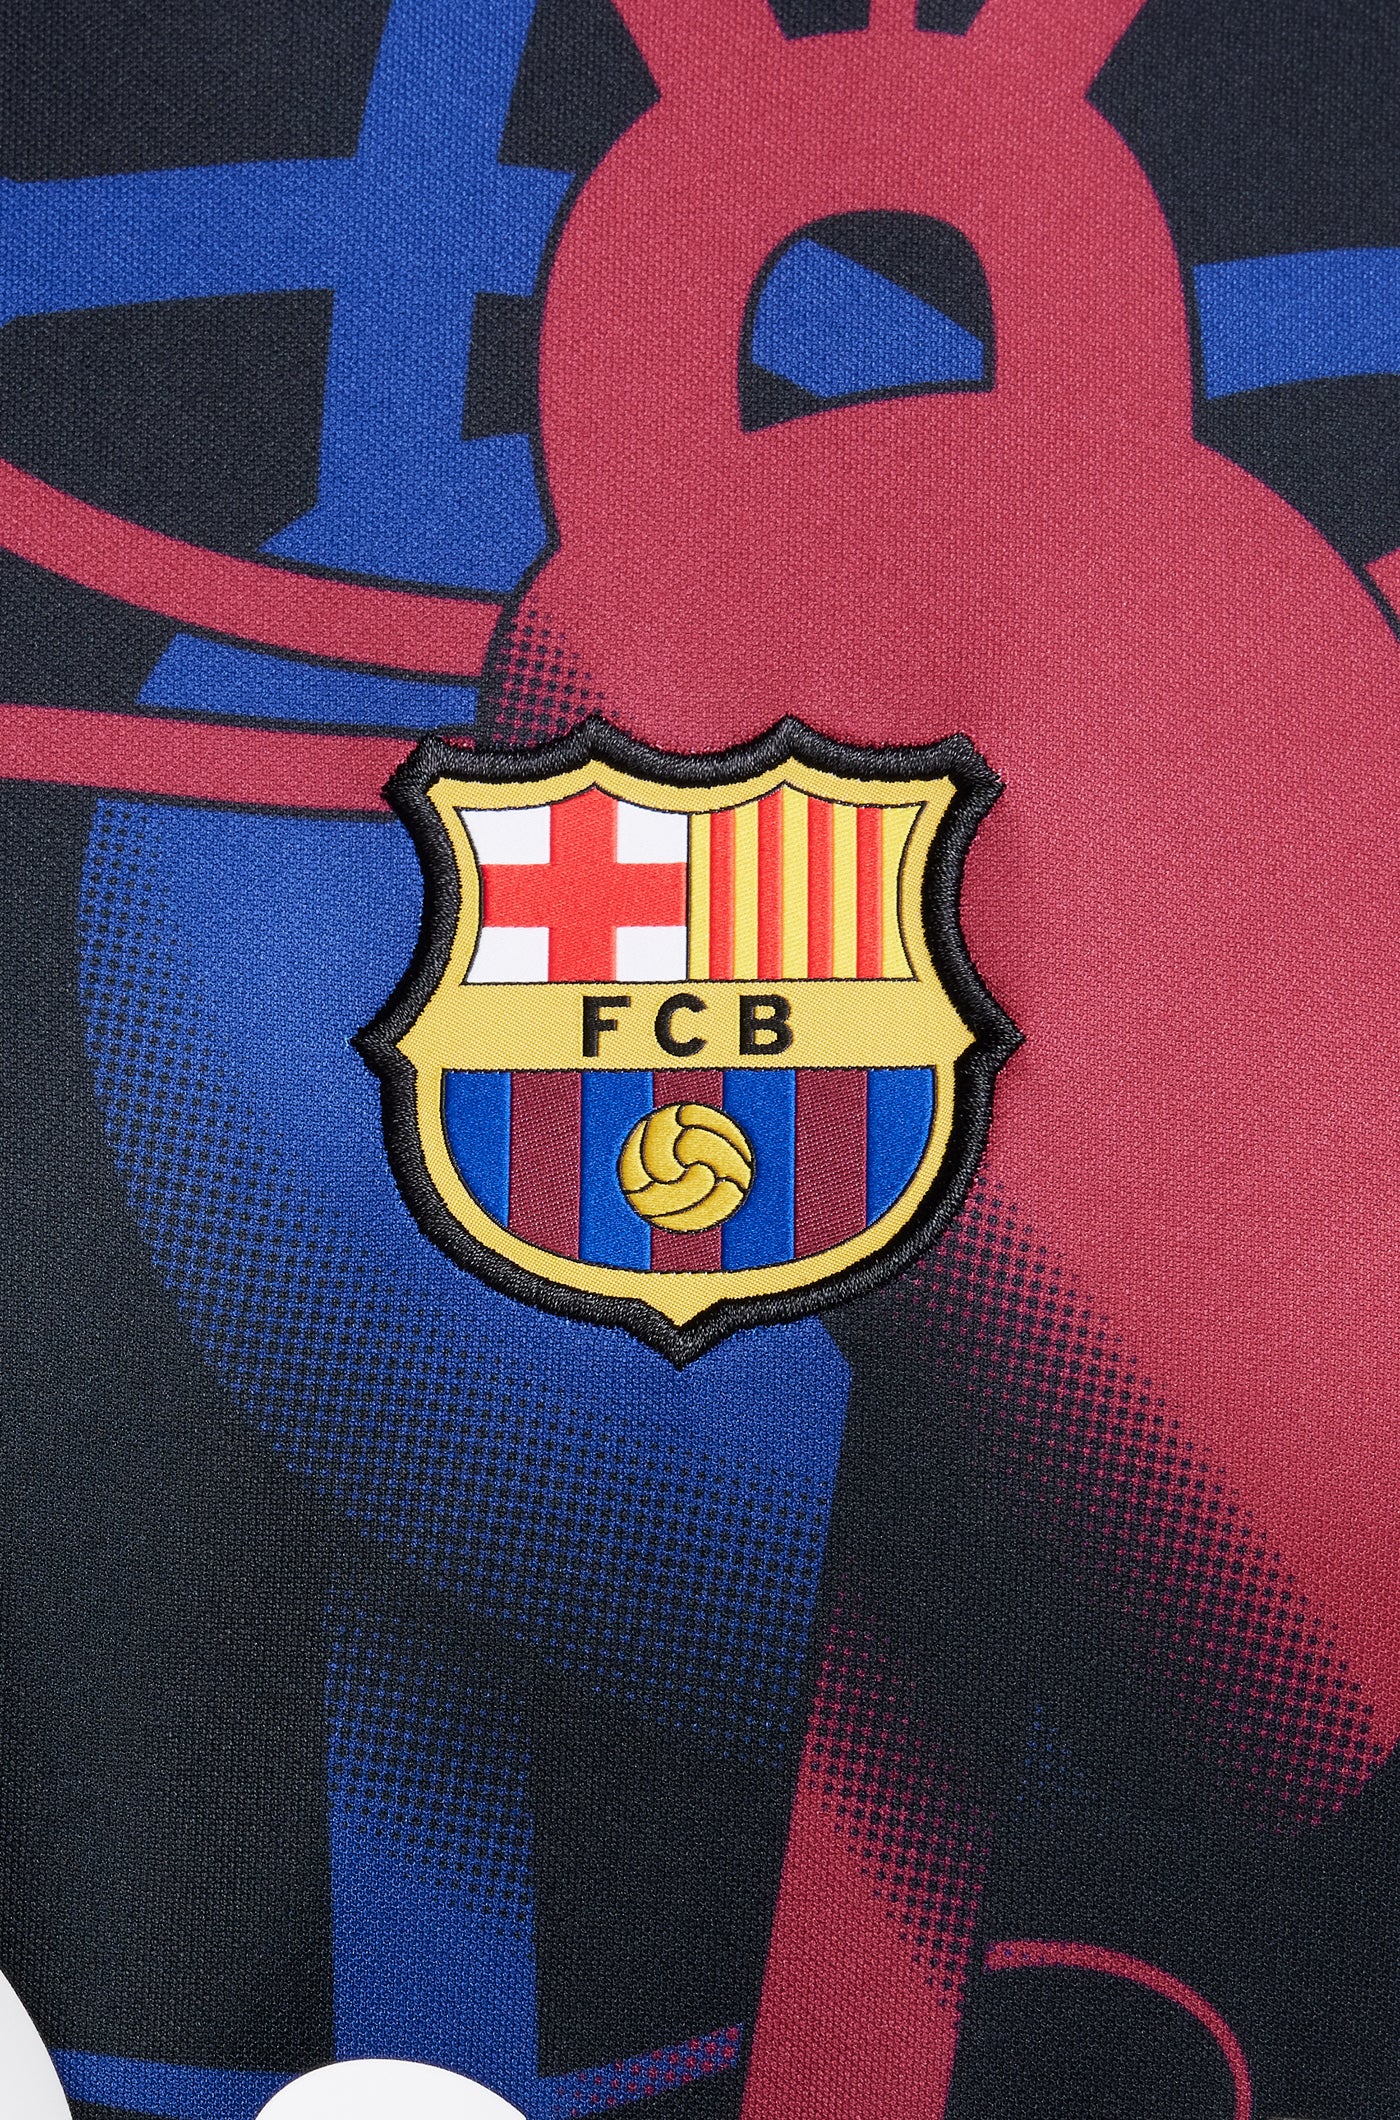 Camiseta prepartido FC Barcelona x Patta